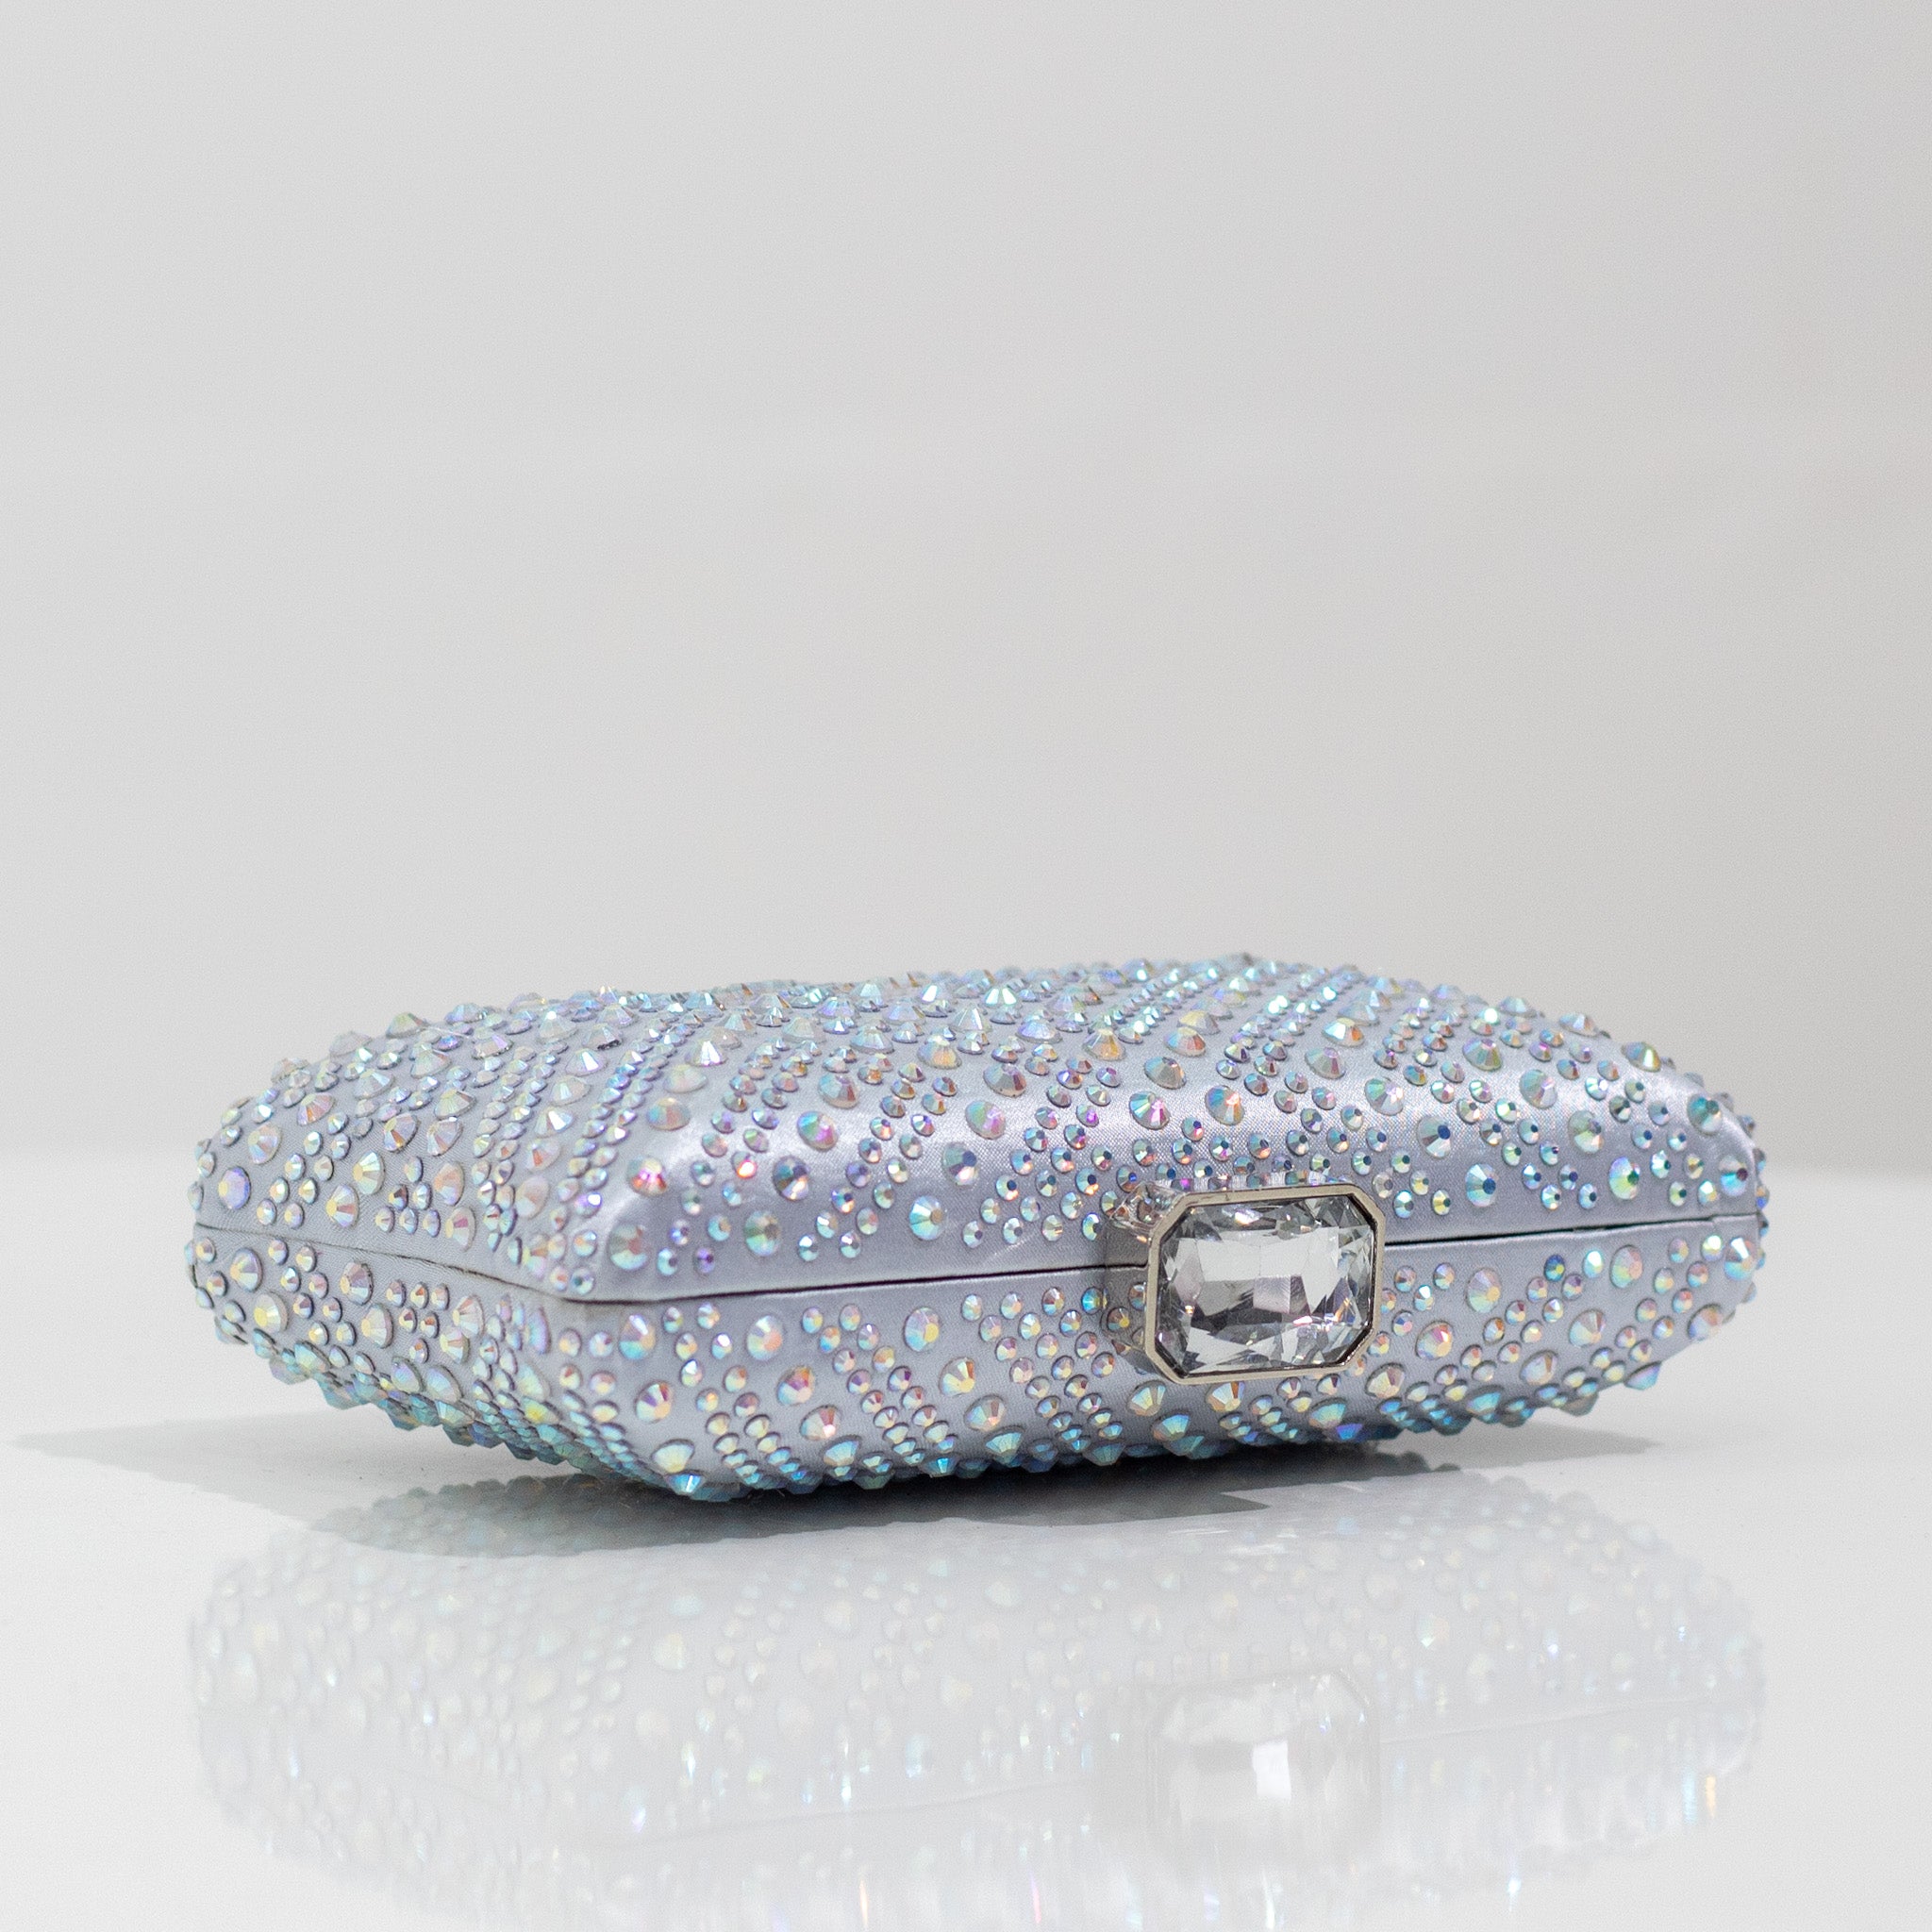 Silver diamante designs clasp clutch bag xayah